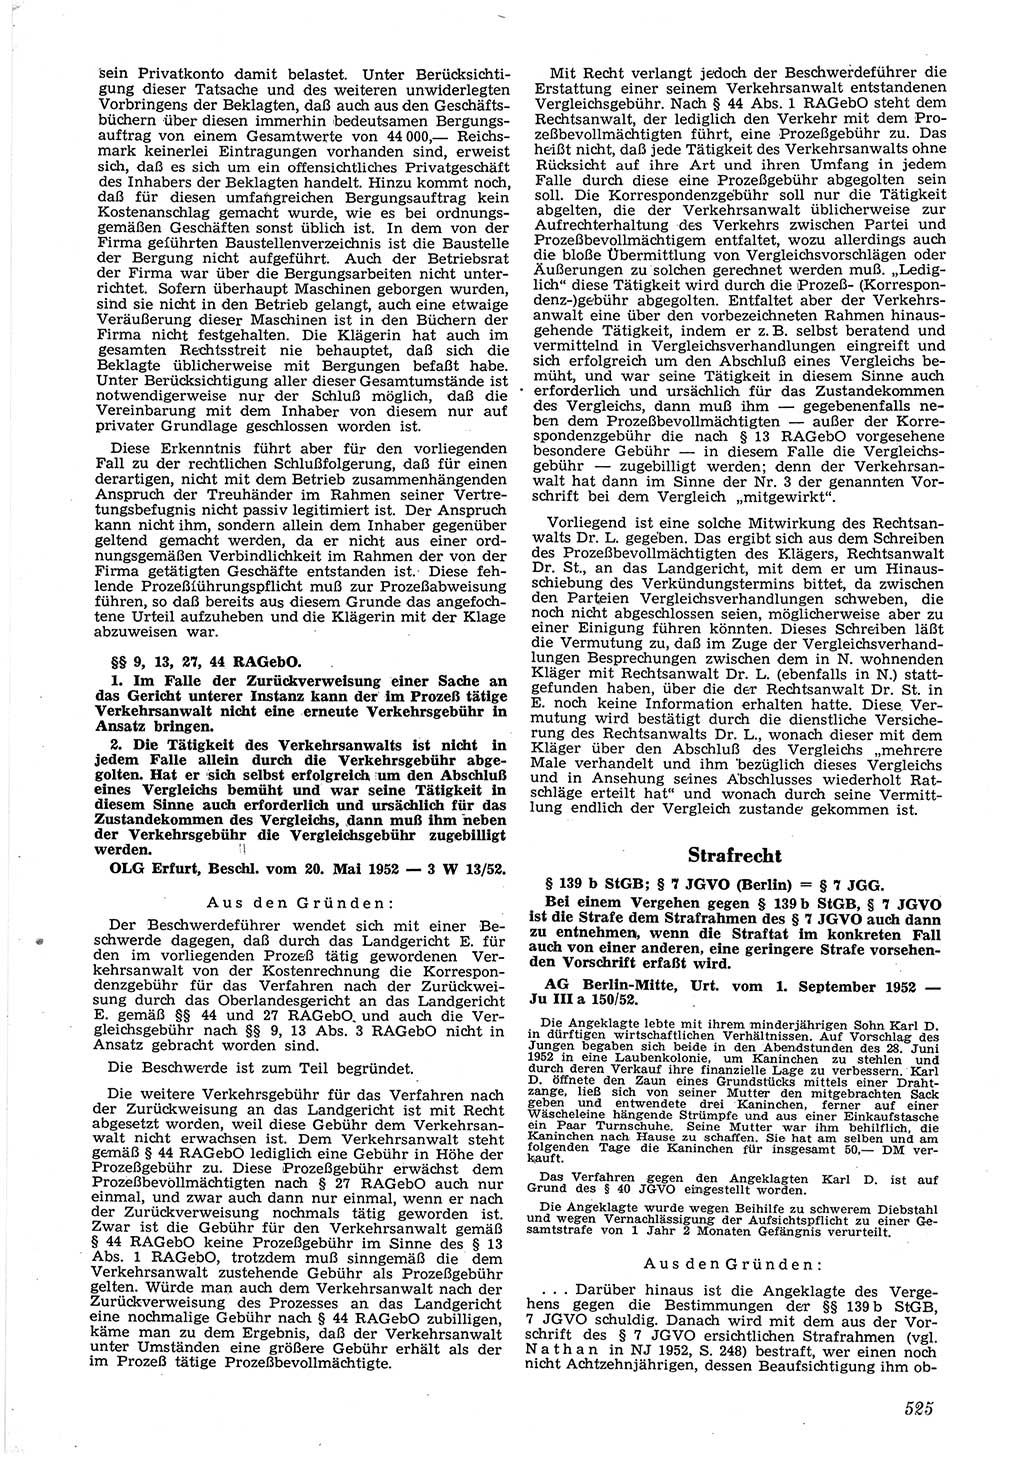 Neue Justiz (NJ), Zeitschrift für Recht und Rechtswissenschaft [Deutsche Demokratische Republik (DDR)], 6. Jahrgang 1952, Seite 525 (NJ DDR 1952, S. 525)